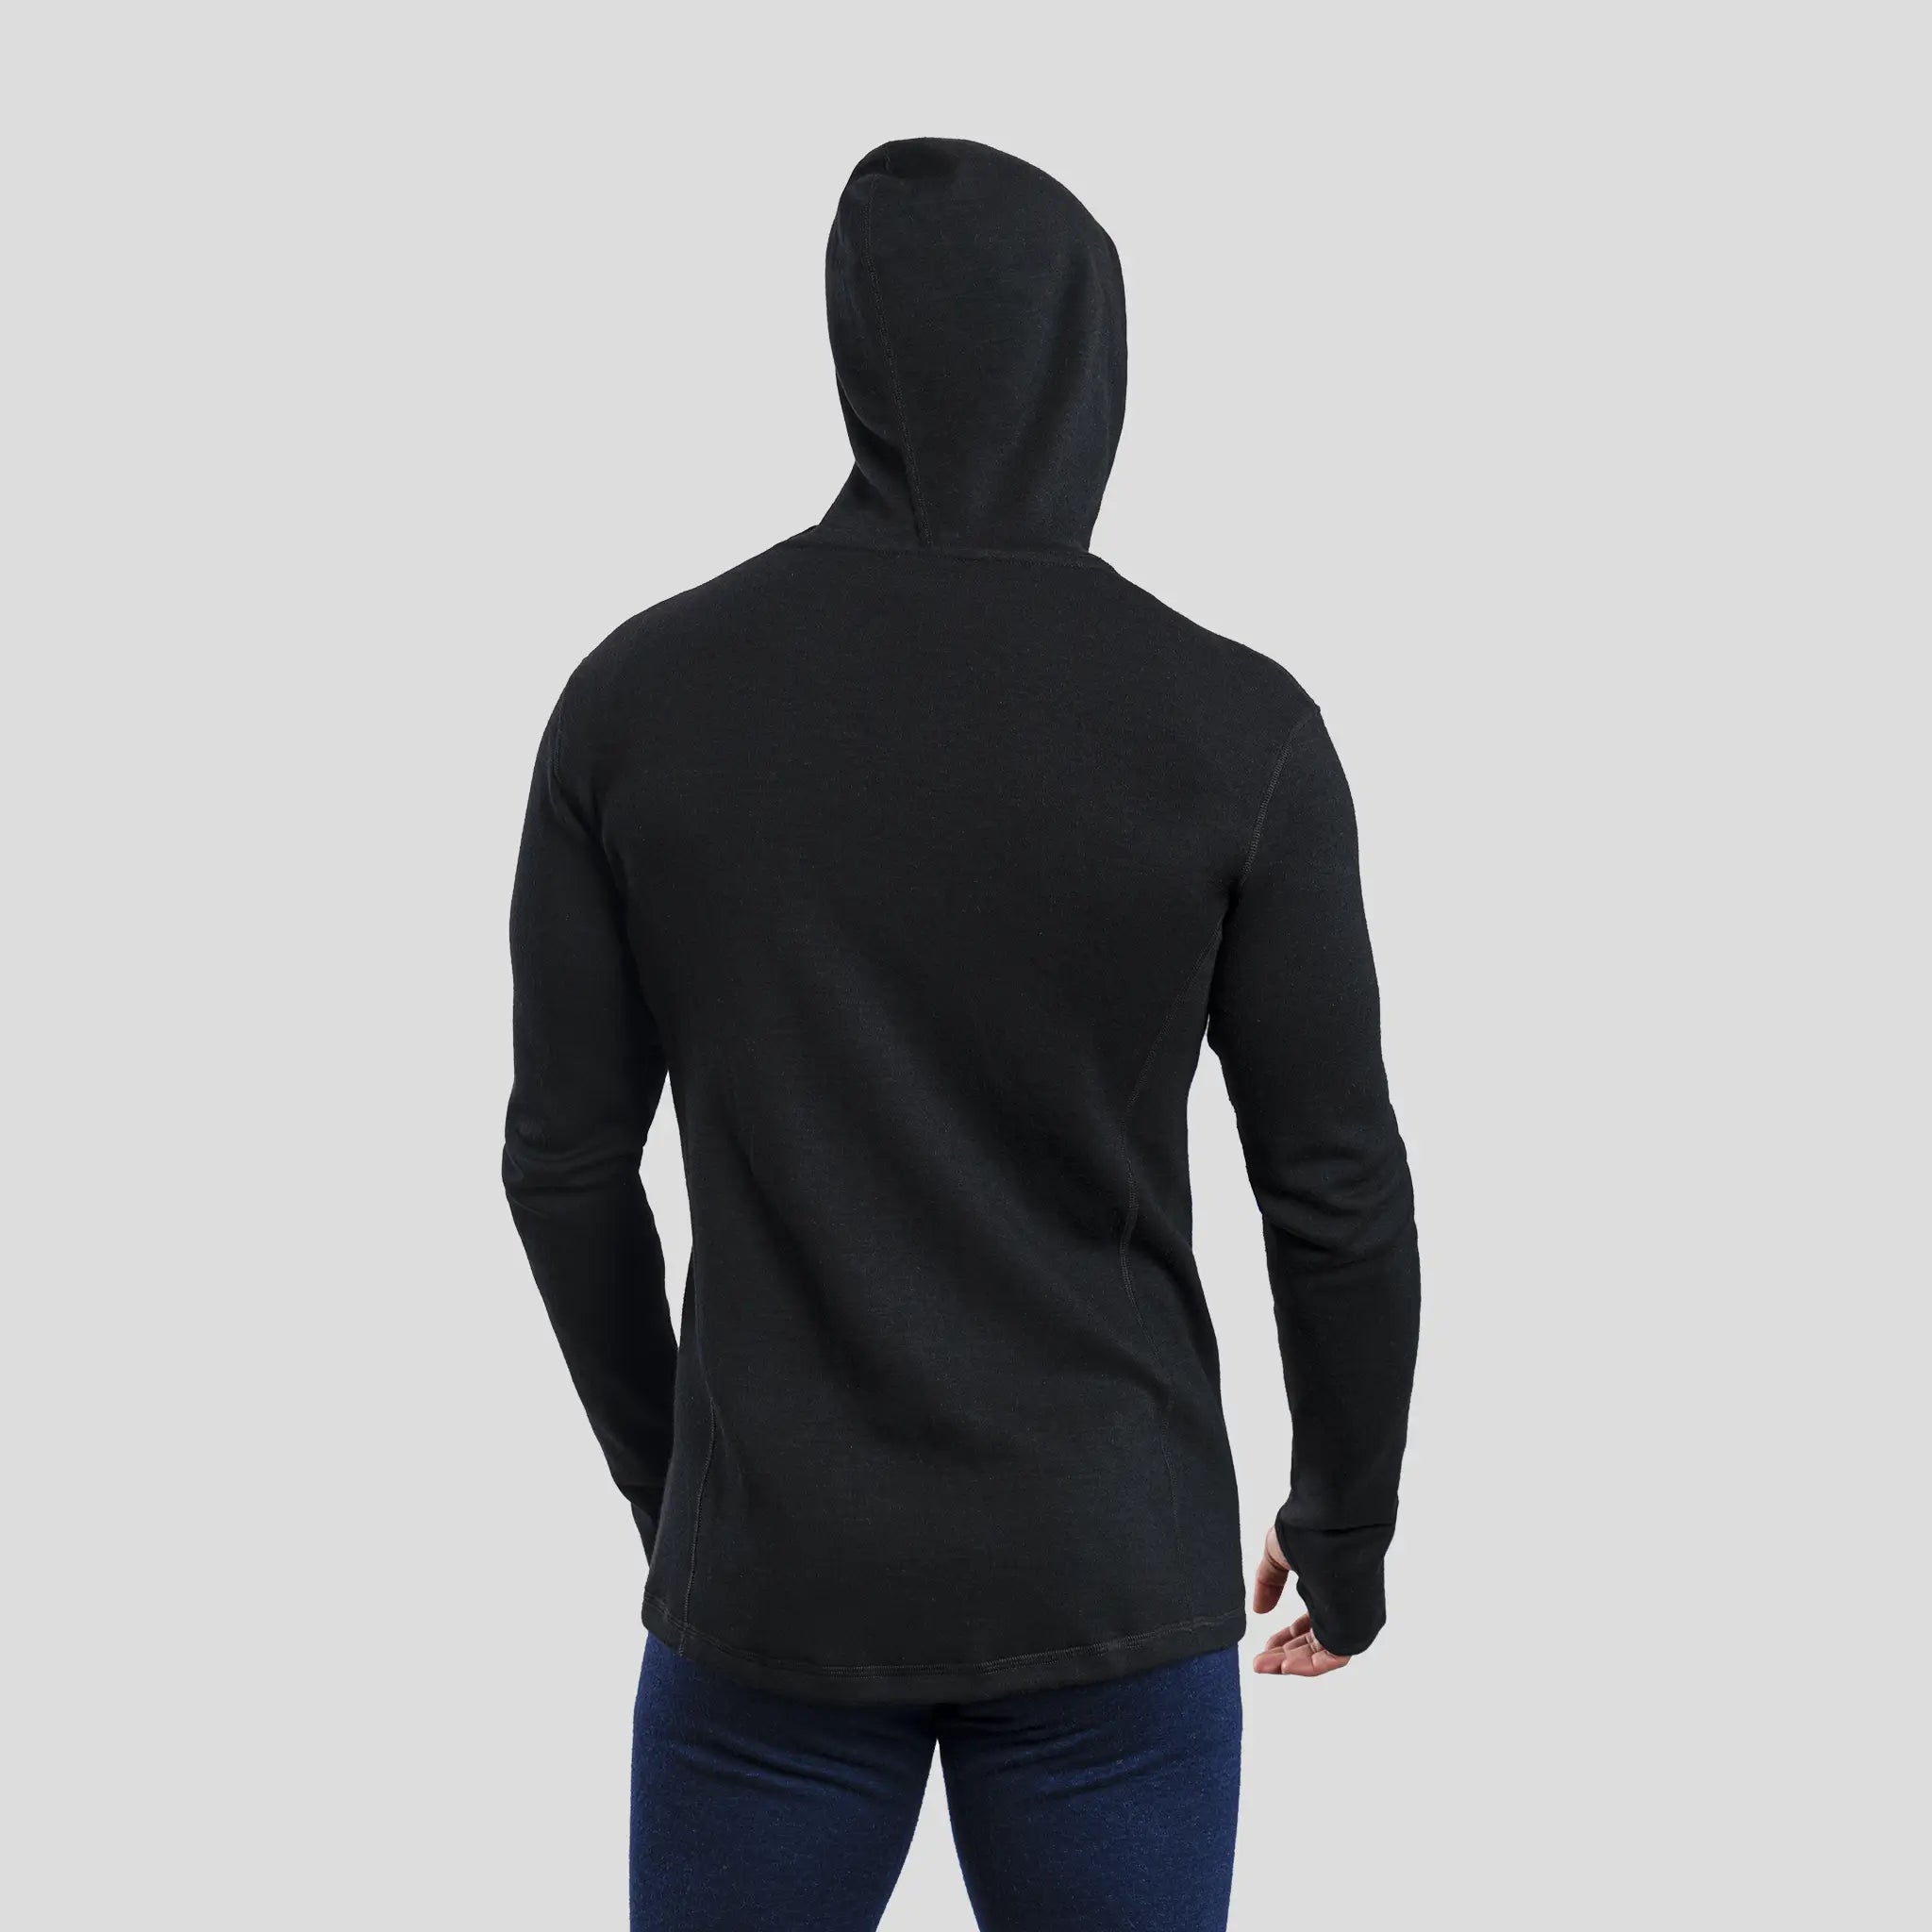 mens warmest hoodie jacket full zip color black